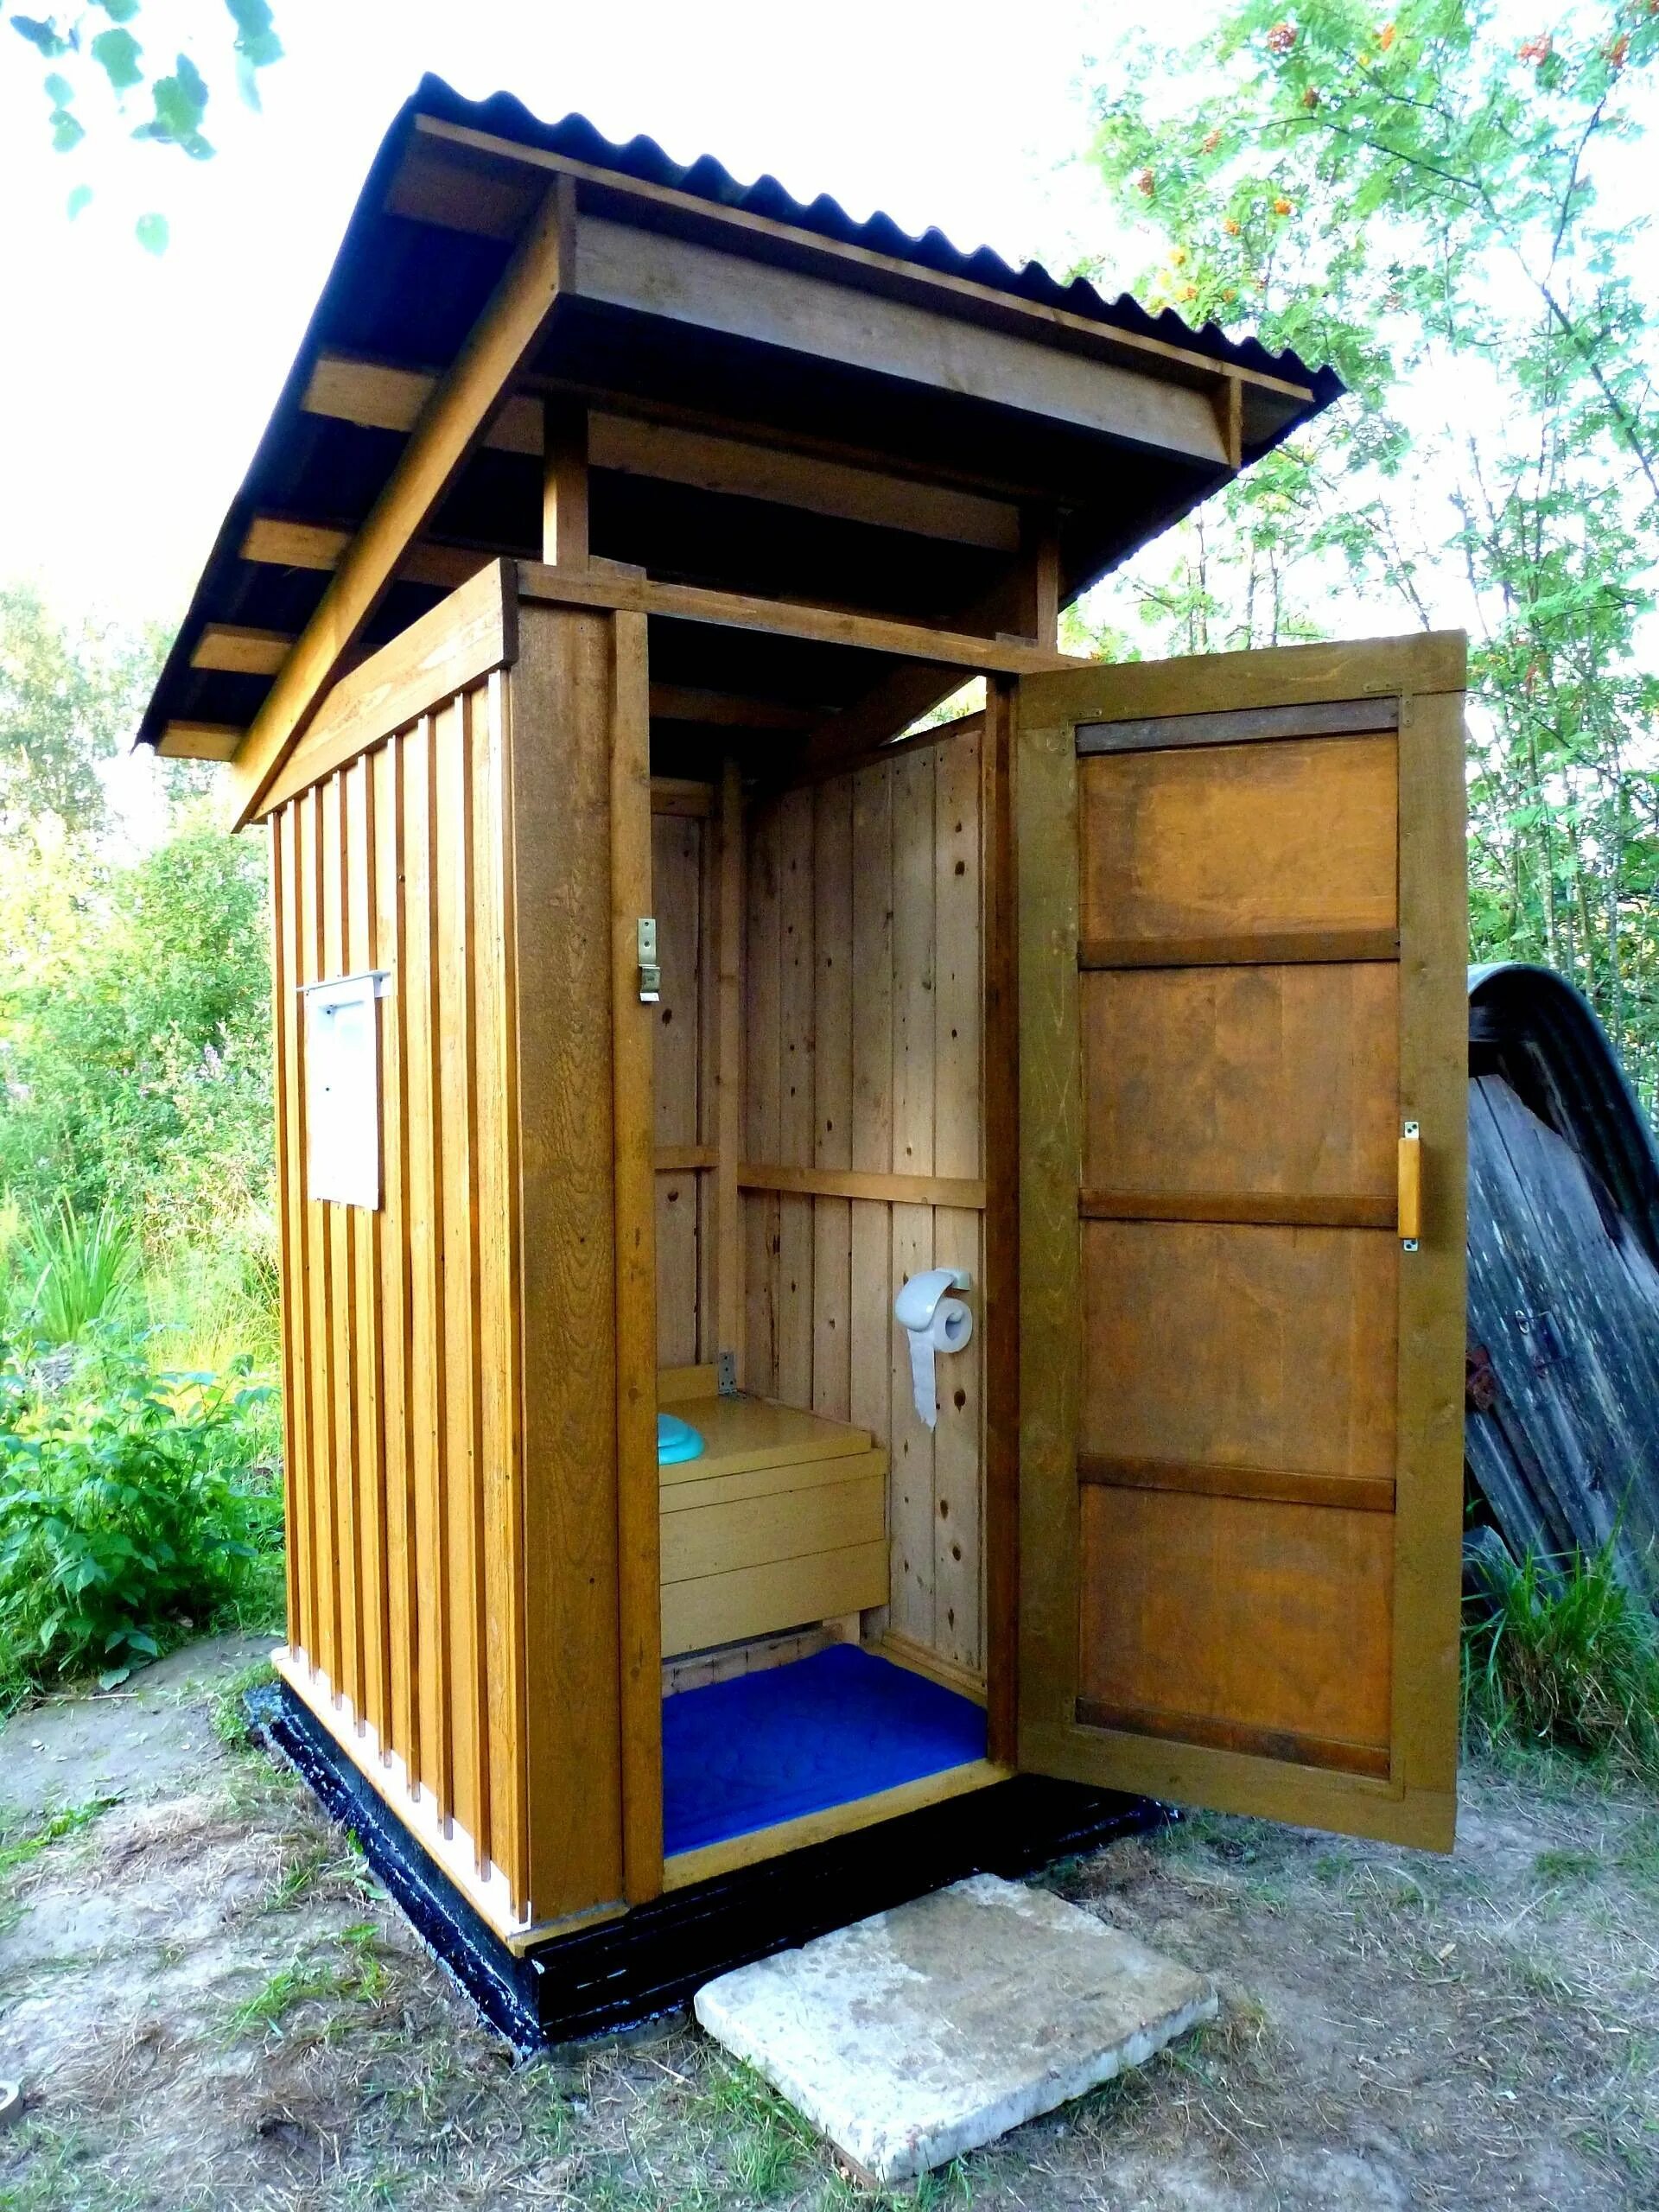 Дачный пудр клозет. Туалет пудр клозет. Туалет домик для дачи. Красивый туалет на даче.